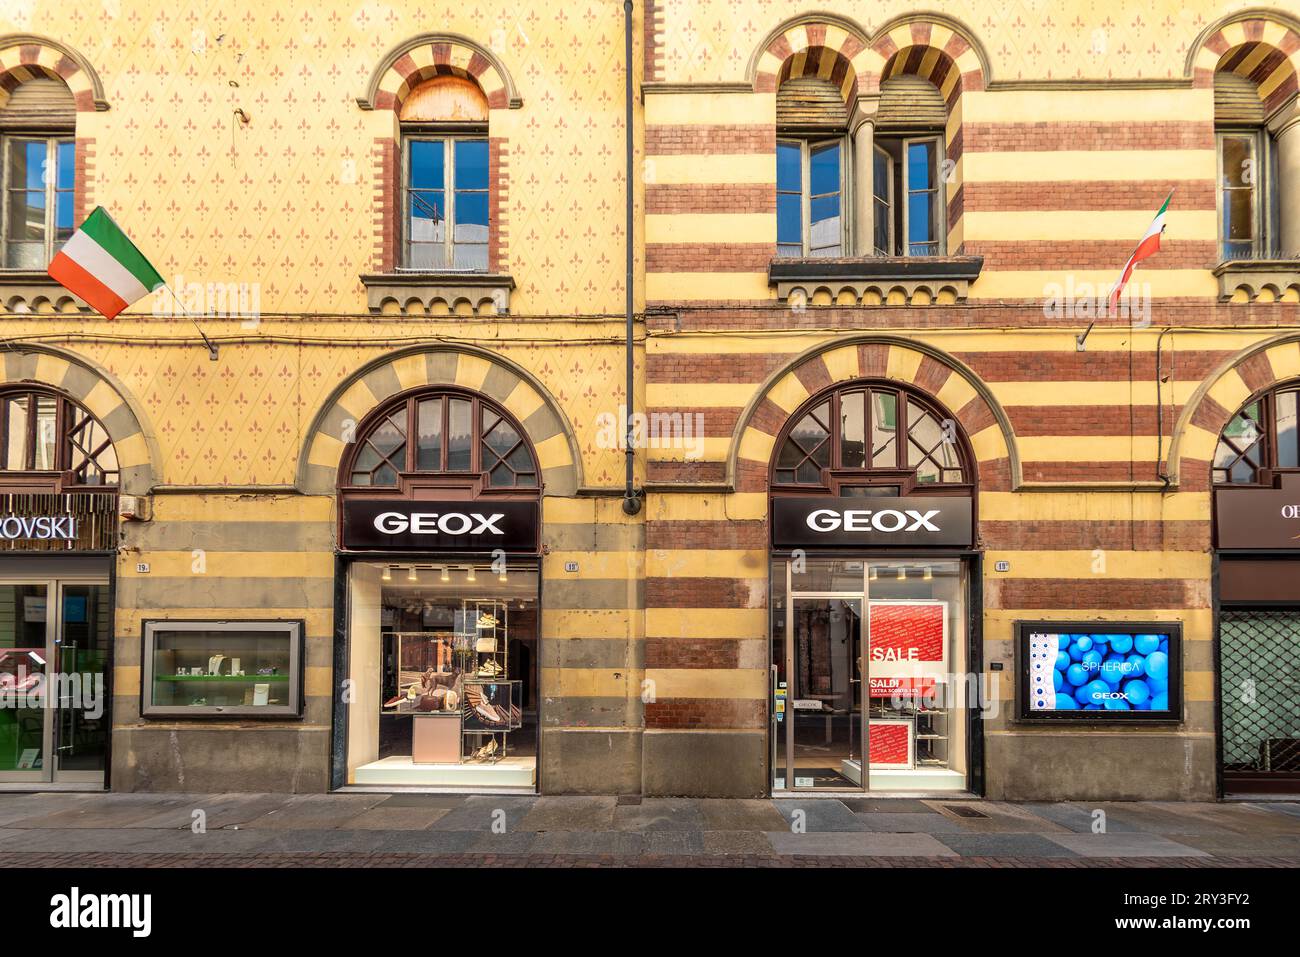 Alba, Italie - 20 août 2023 : magasin de chaussures Geox dans un bâtiment historique de la rue principale via Vittorio Emanuele. Geox est une co de vêtements italienne à succès Banque D'Images